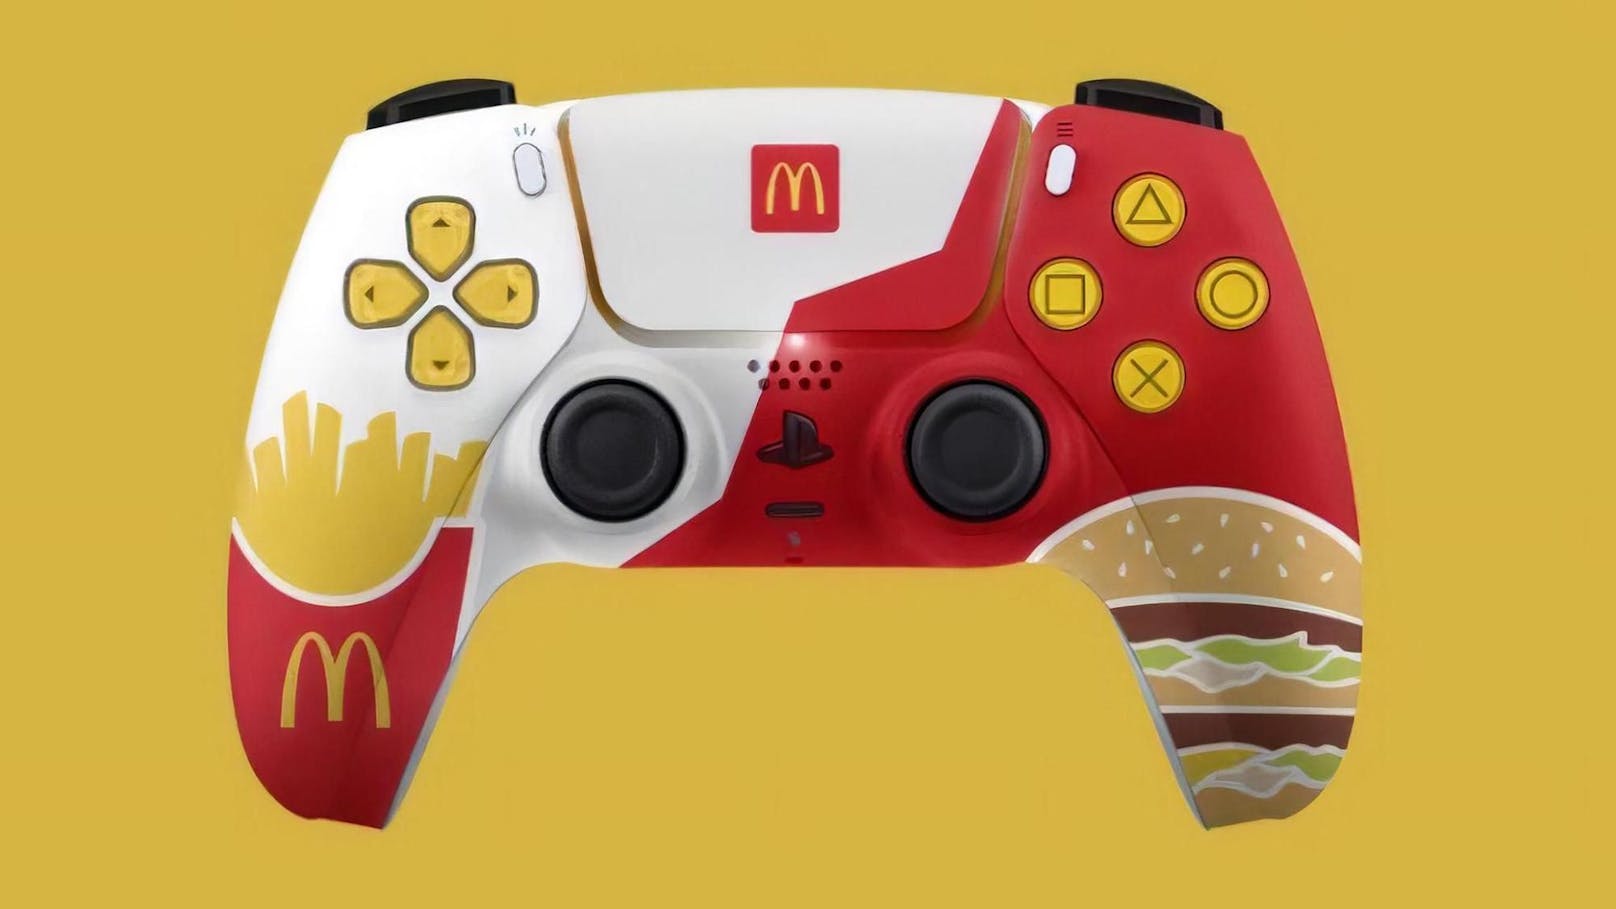 So sieht der PS5-Controller von McDonald’s aus. Dieser wird nun nicht mehr verschenkt.